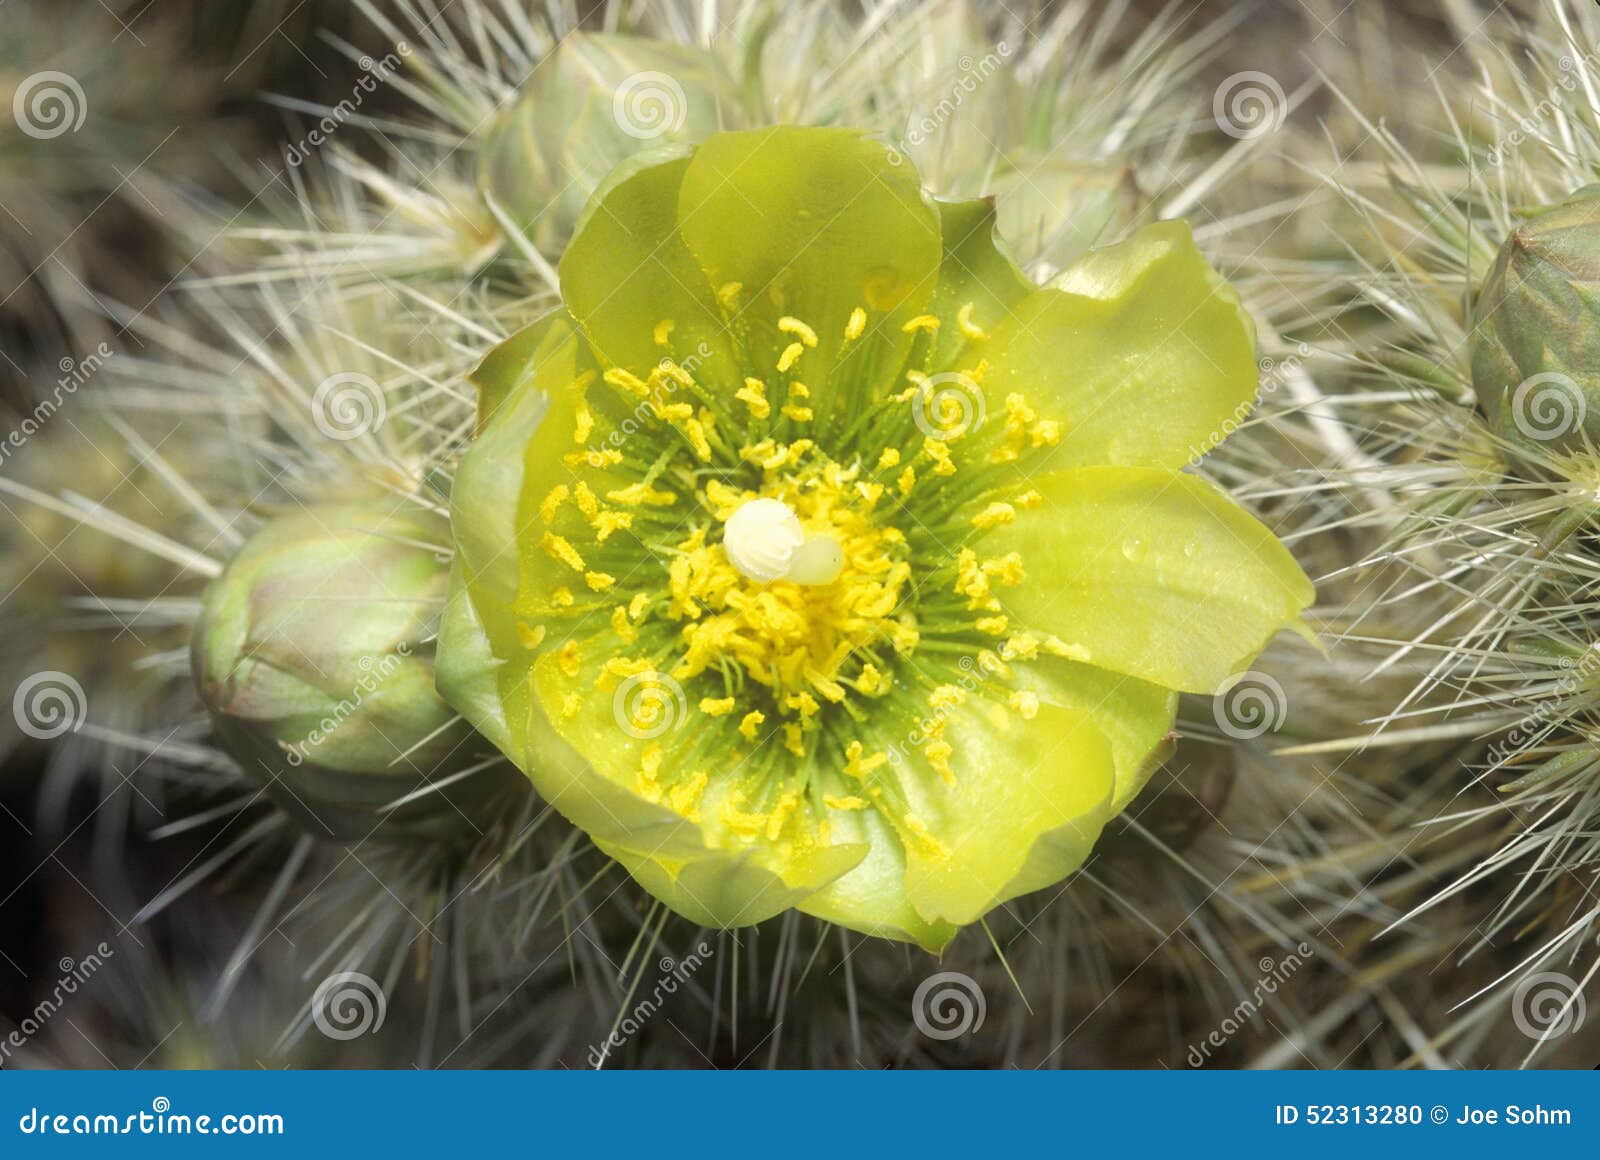 buckhorn cholla cactus, anza borrego desert, ca